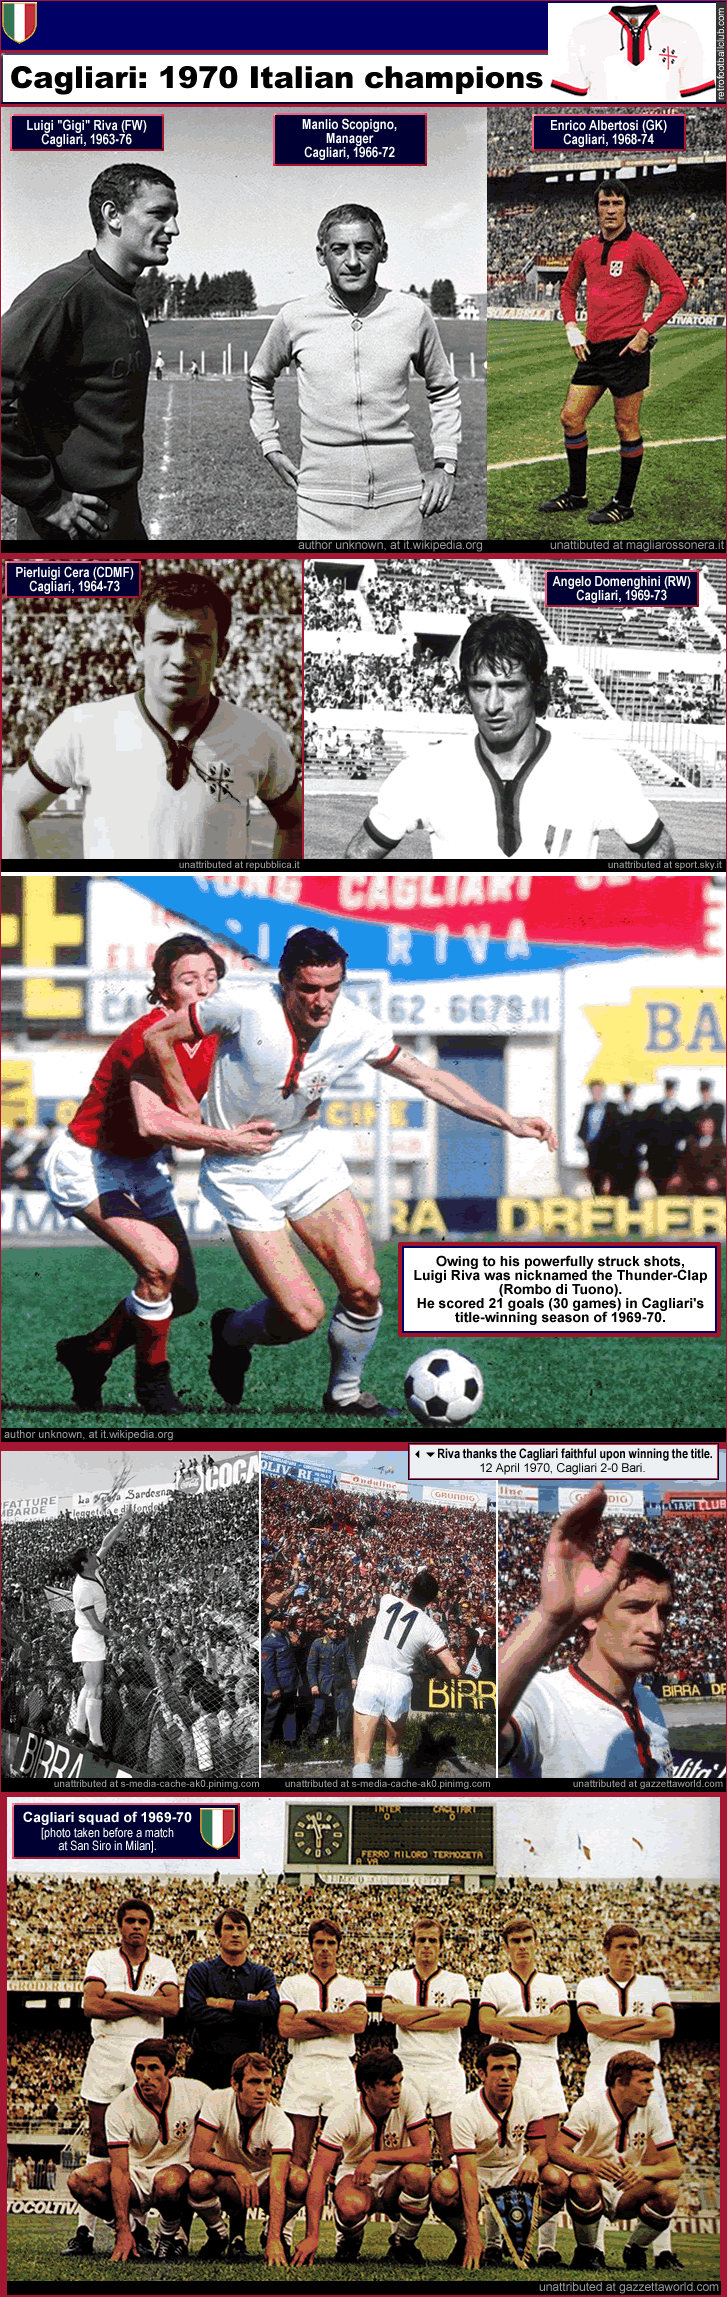 http://billsportsmaps.com/wp-content/uploads/2016/09/cagliari_1969-70_italian-champions_luigi-riva_enrico-albertosi_pierluigi-cera_alberto-domenghini_manlio-scopigno_f_.gif